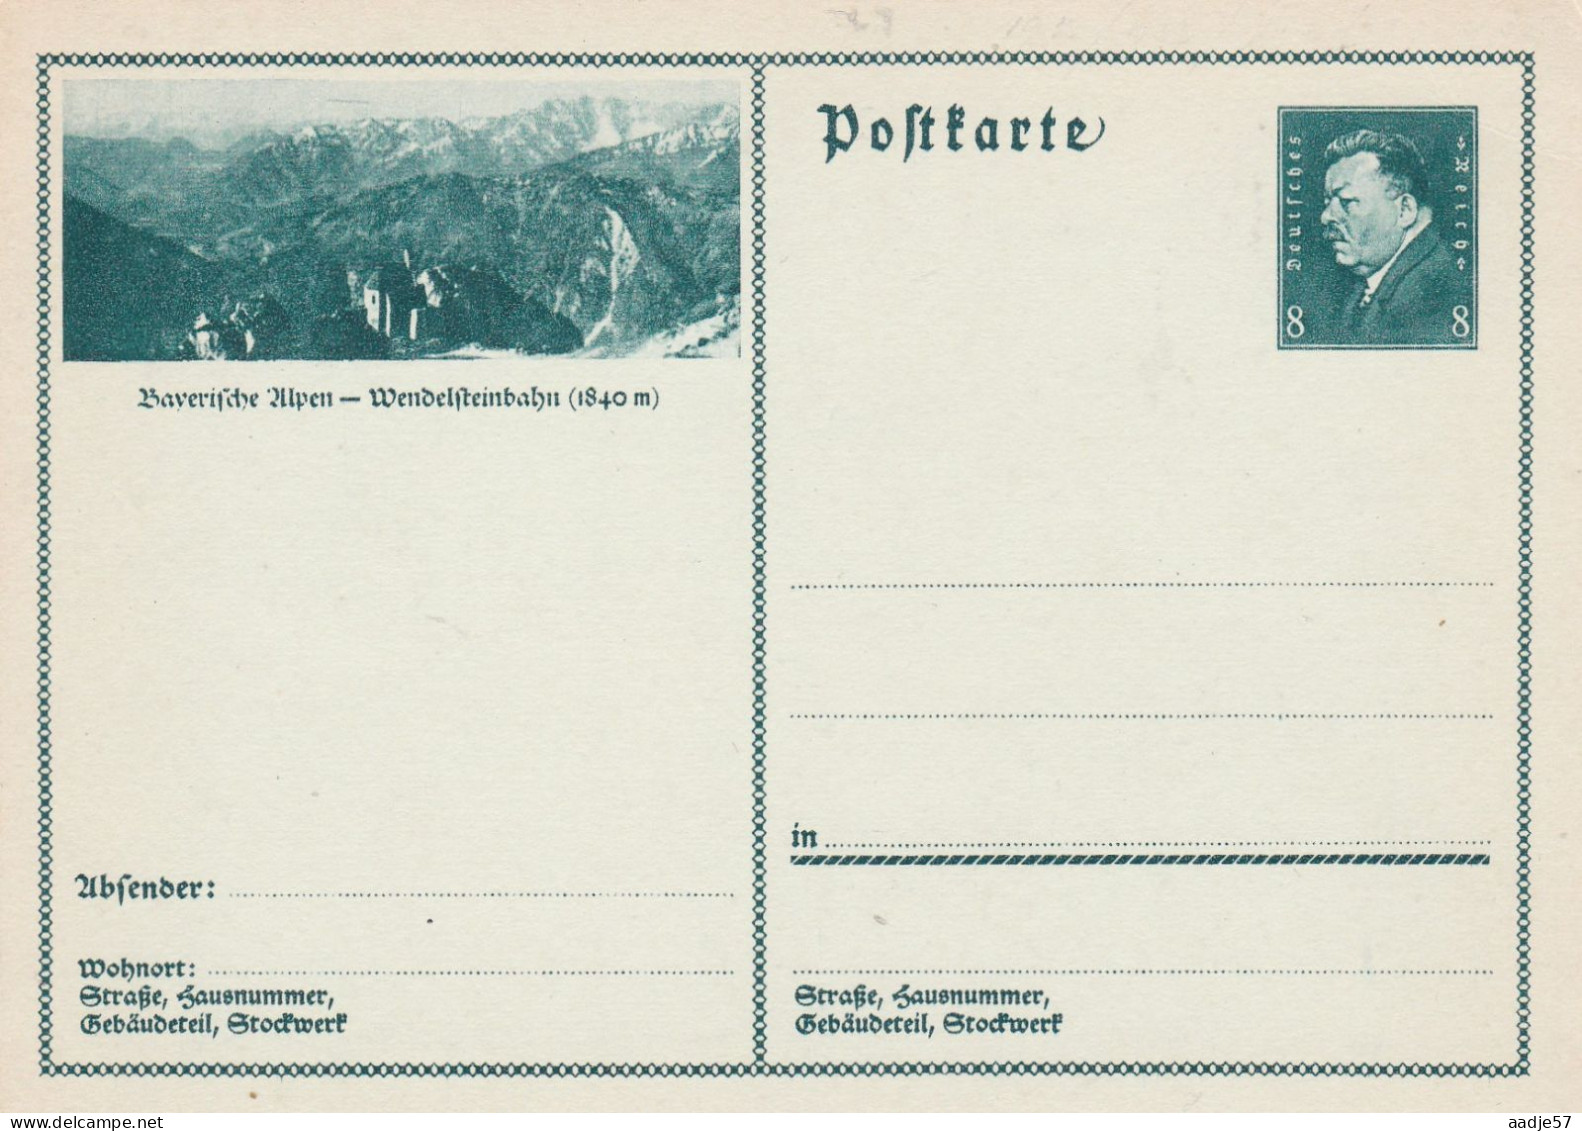 Besucht Baverische Alpen Wendelsteinbahn - Bildpostkarte 1931 -  Mint - Postkarten